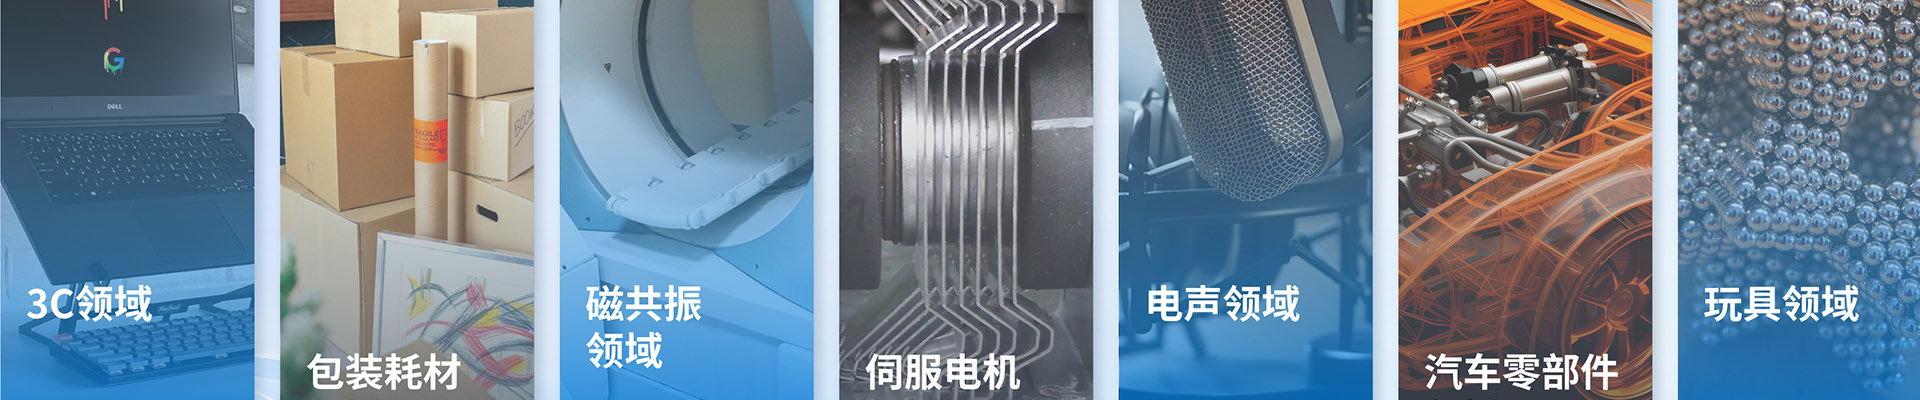 异形钕铁硼磁铁-钕铁硼系列-宁波允亿磁业科技有限公司